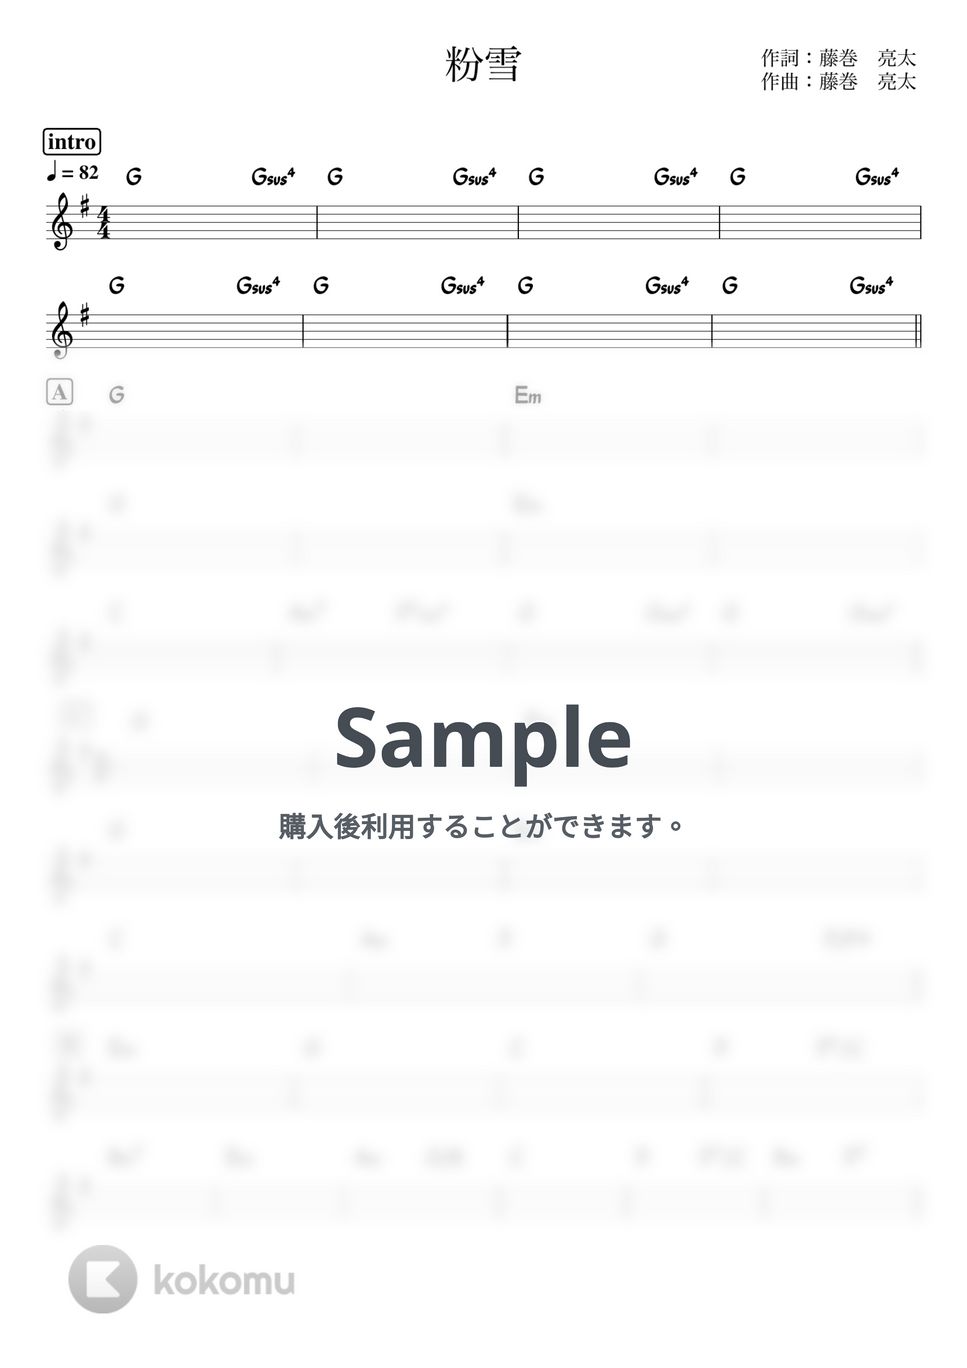 レミオロメン - 粉雪 (バンド用コード譜) by 箱譜屋